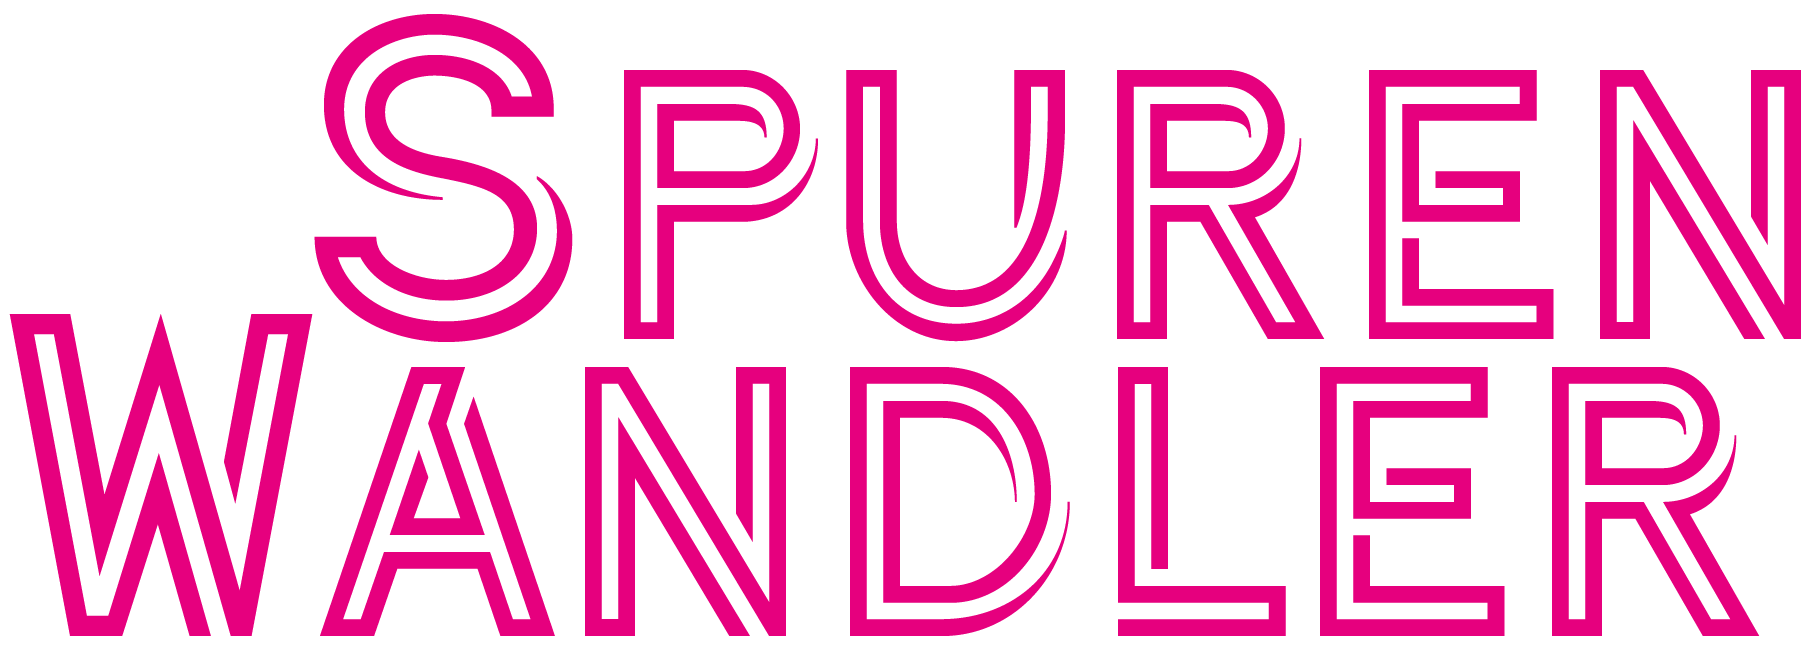 Logo des Projektes SpurenWandler